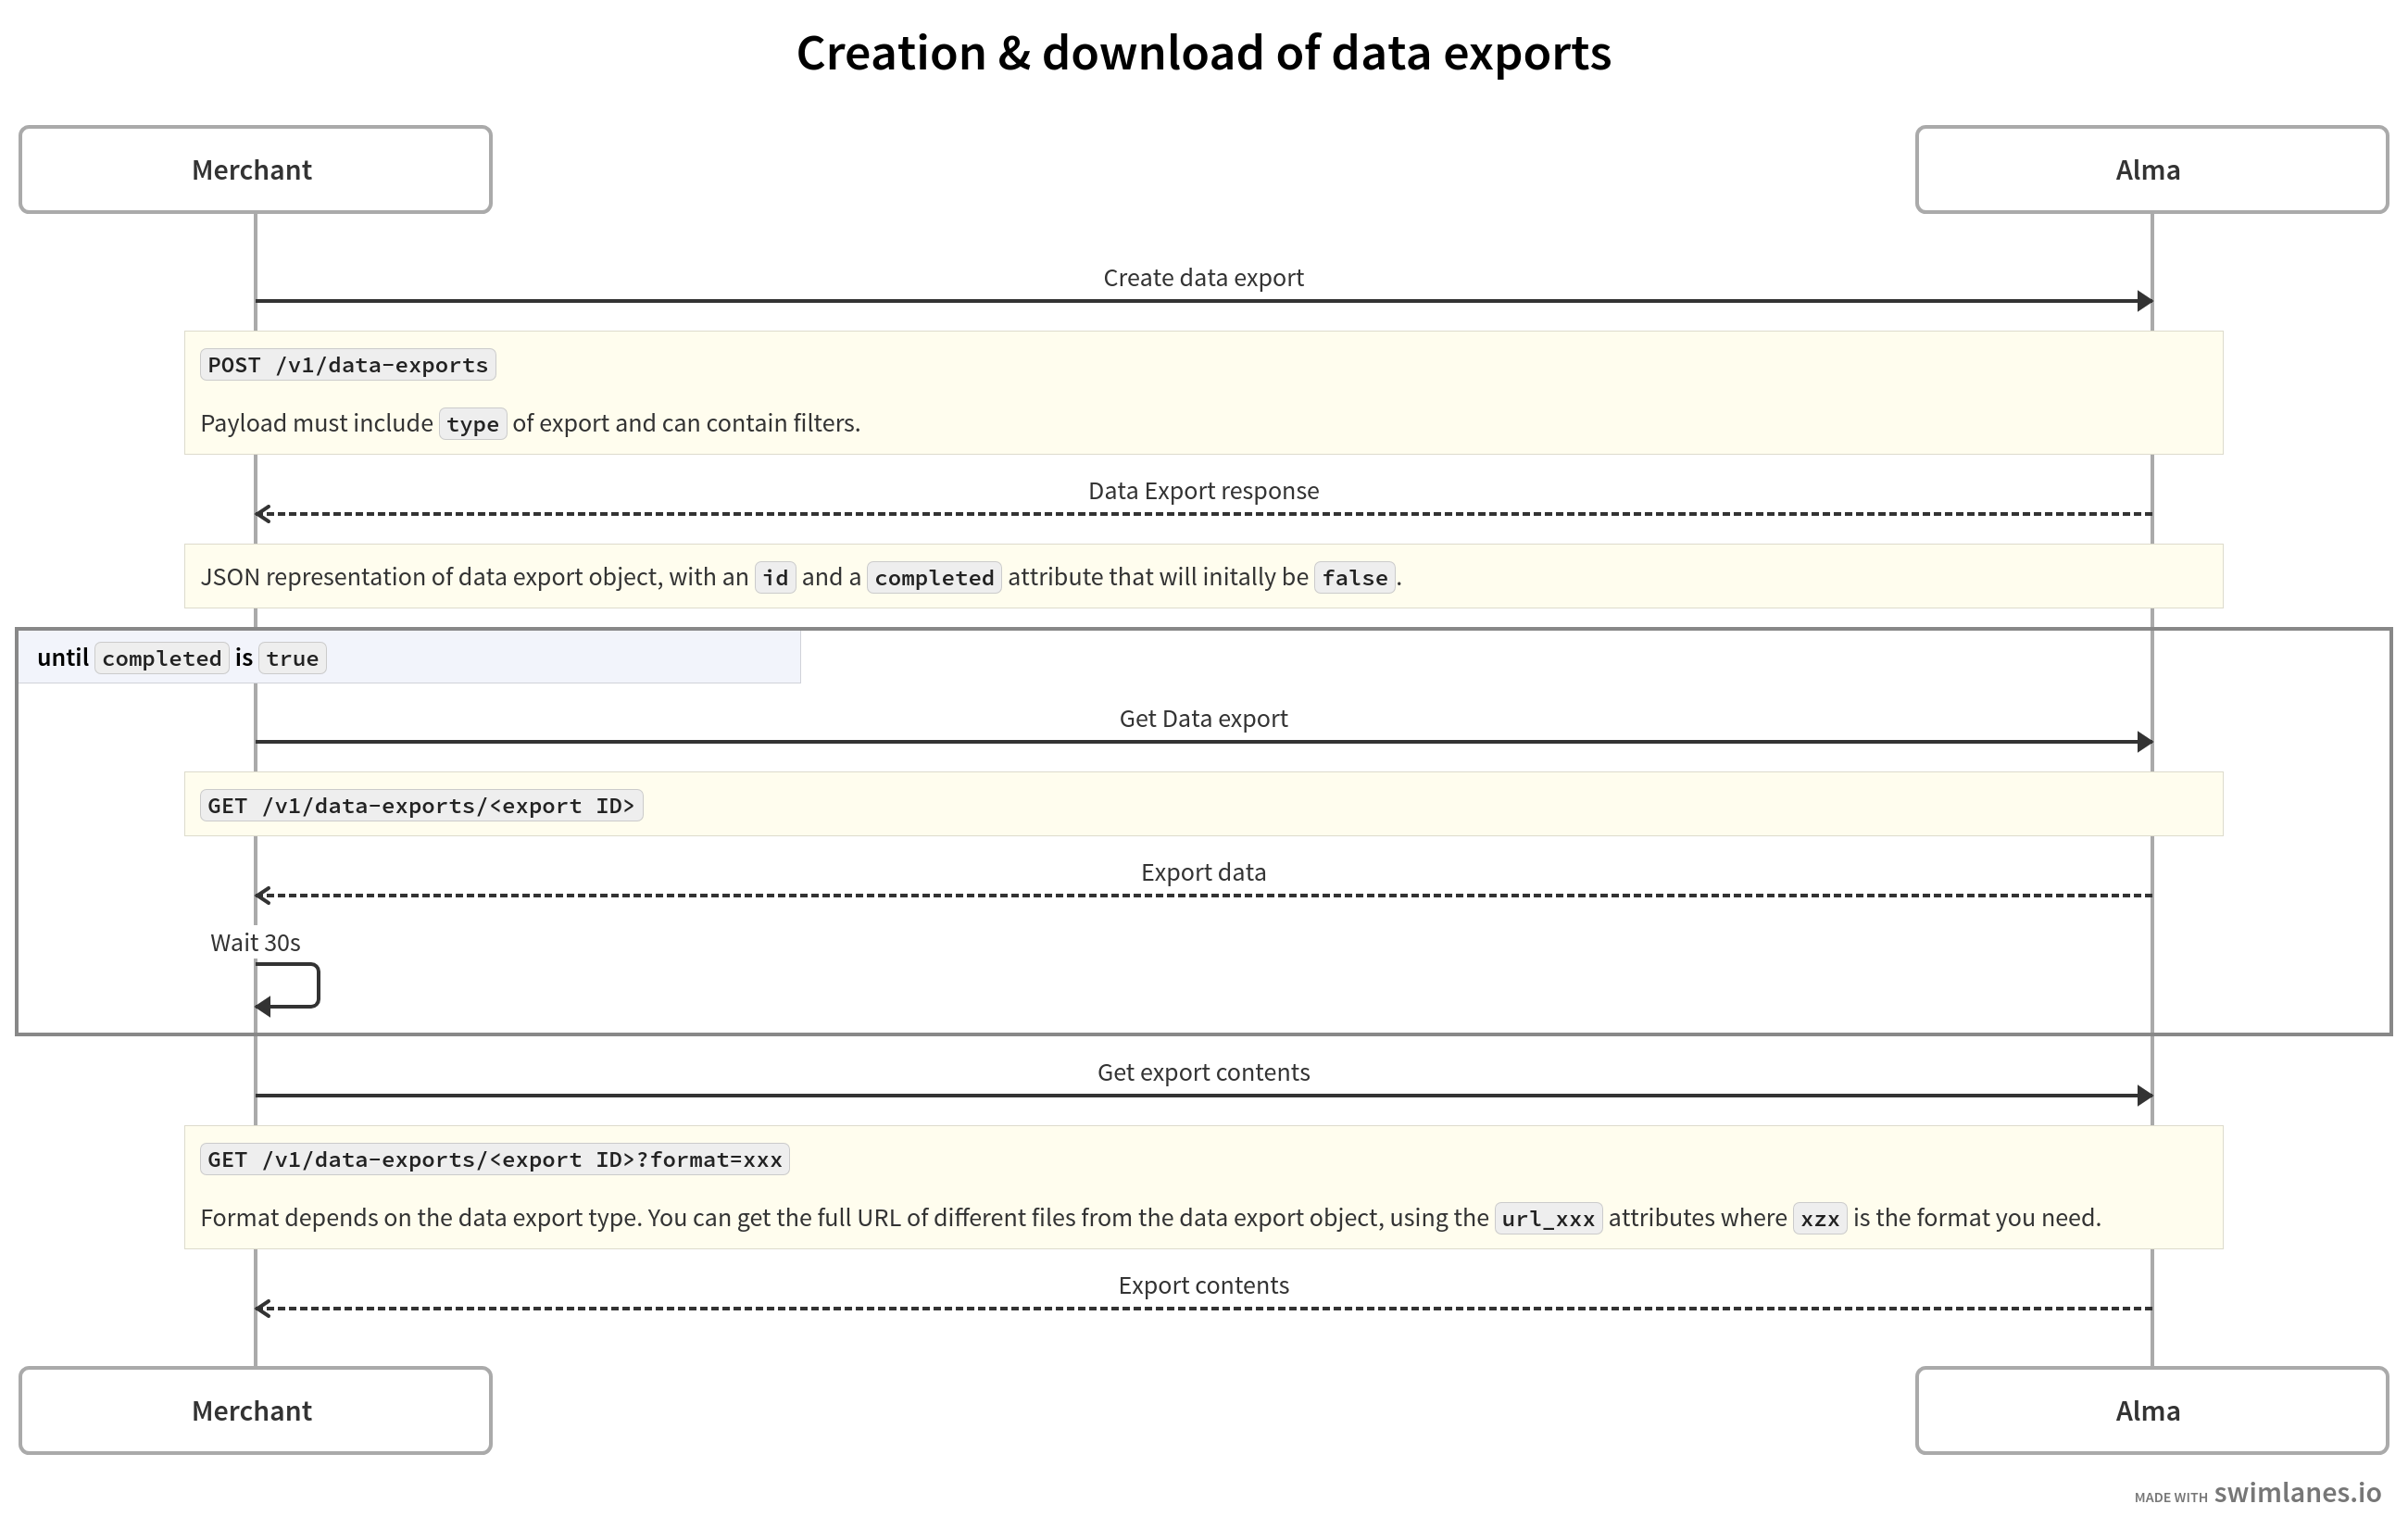 Diagramme de séquence décrivant la création de l'export puis récupération des données